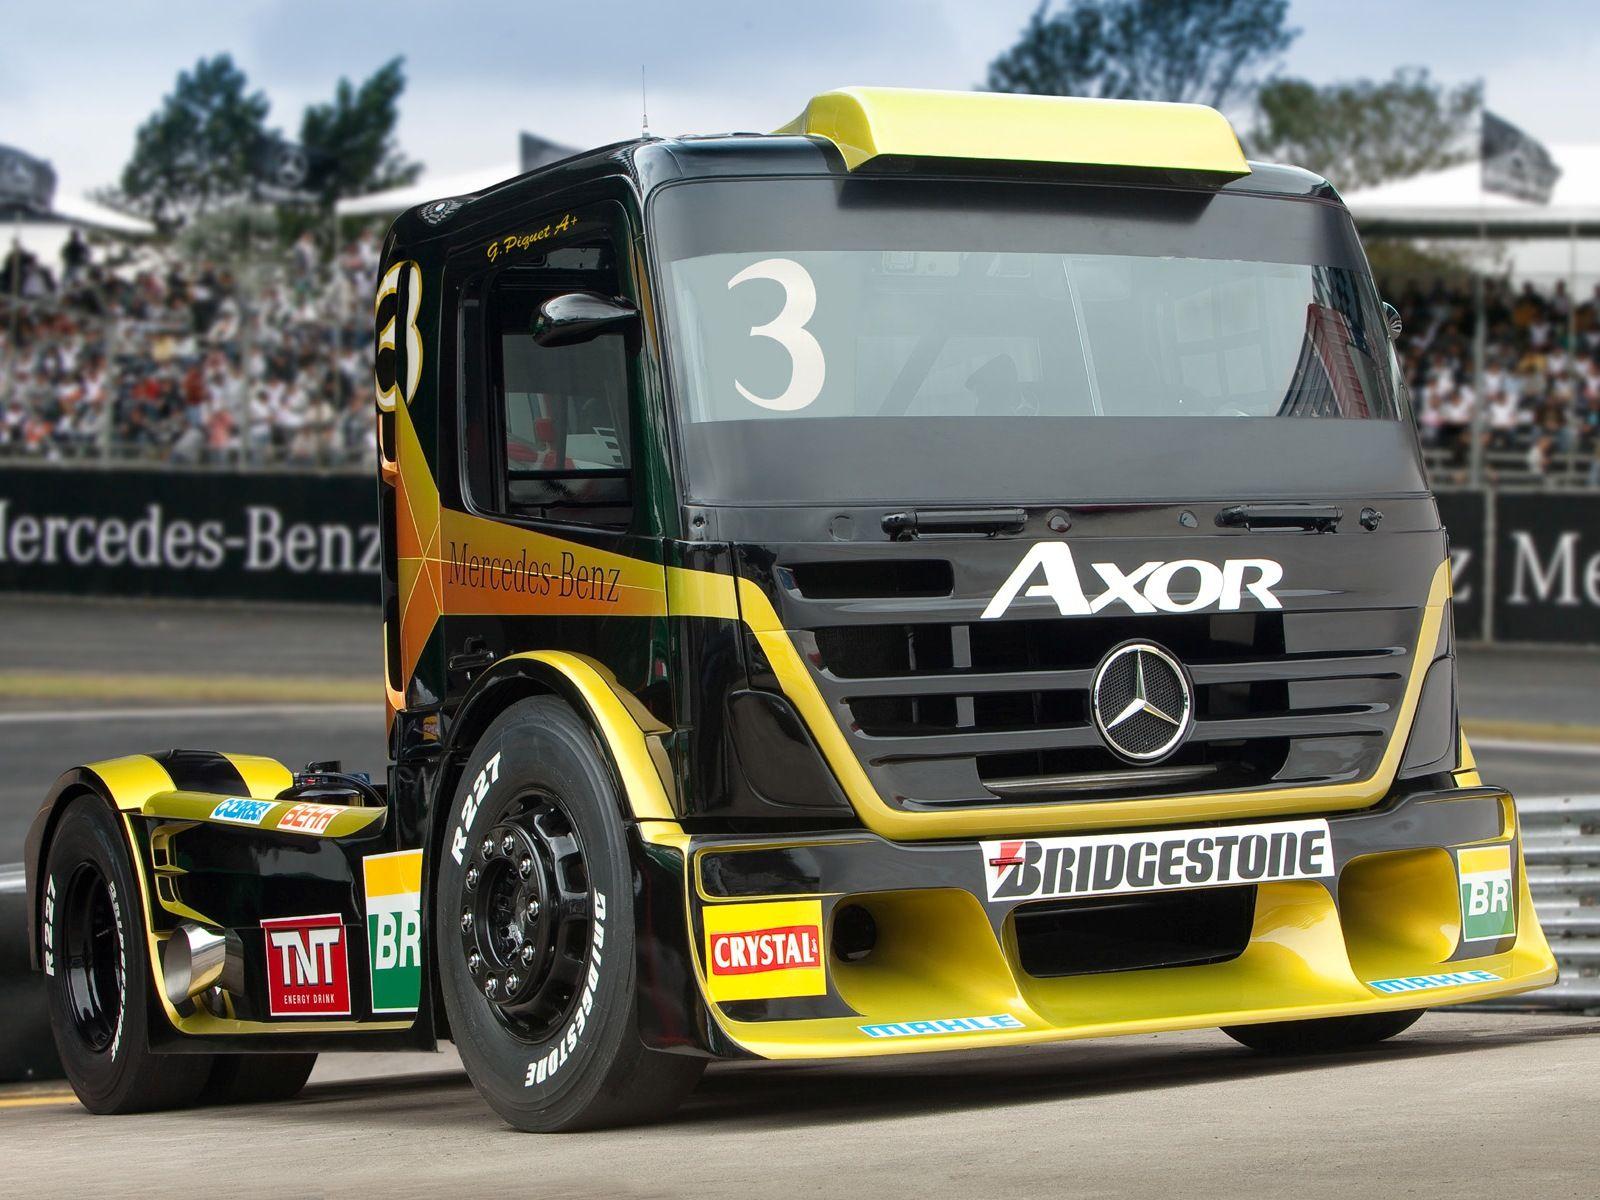 Mercedes Benz Axor Formula Truck tractor semi rig rigs race